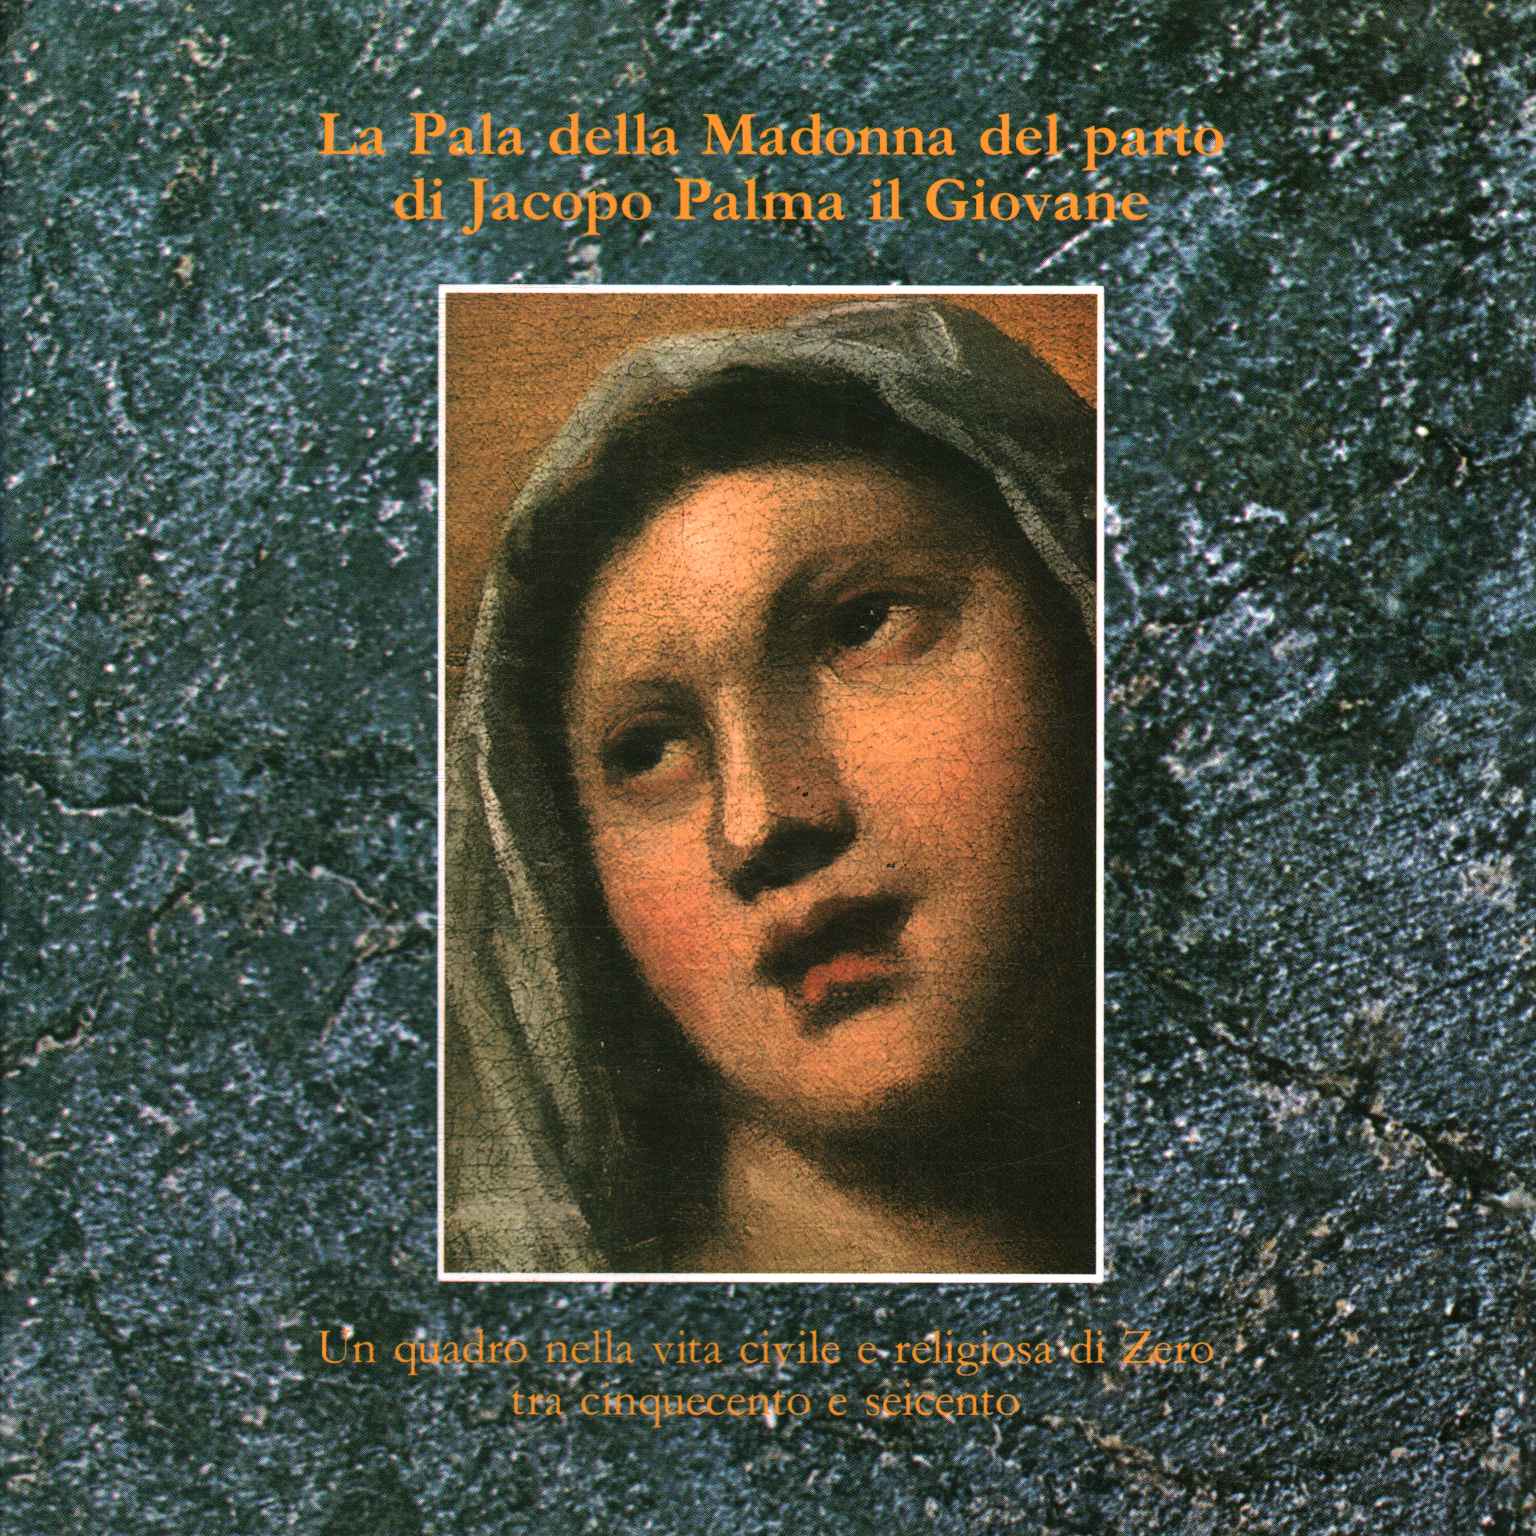 Das Altarbild der Madonna del Parto von J